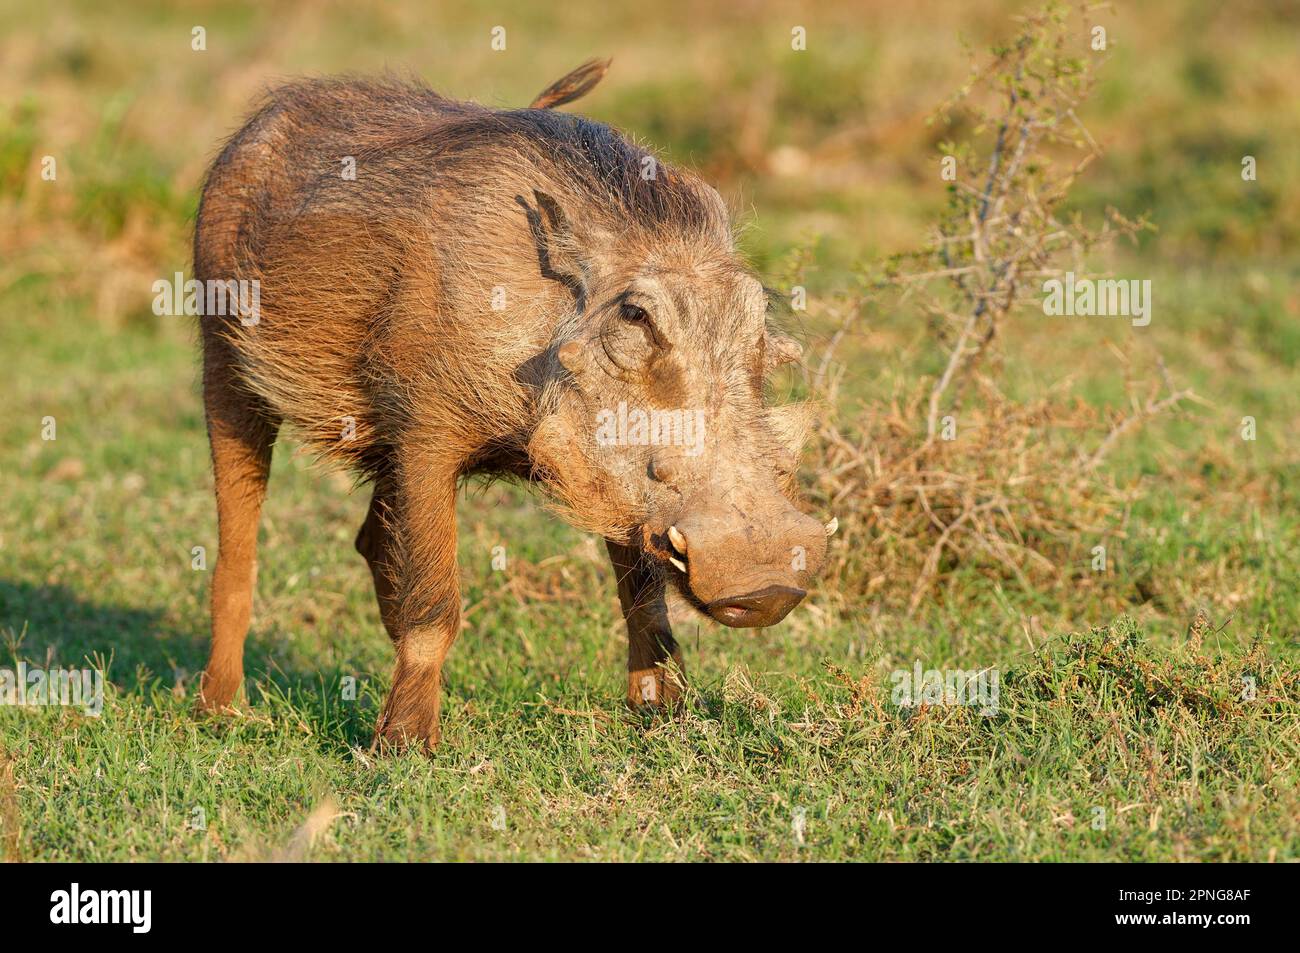 XzGemeines Warzenschwein (Phacochoerus africanus), Fütterung von Gras, Addo Elephant National Park, Ostkap, Südafrika, Afrika Stockfoto